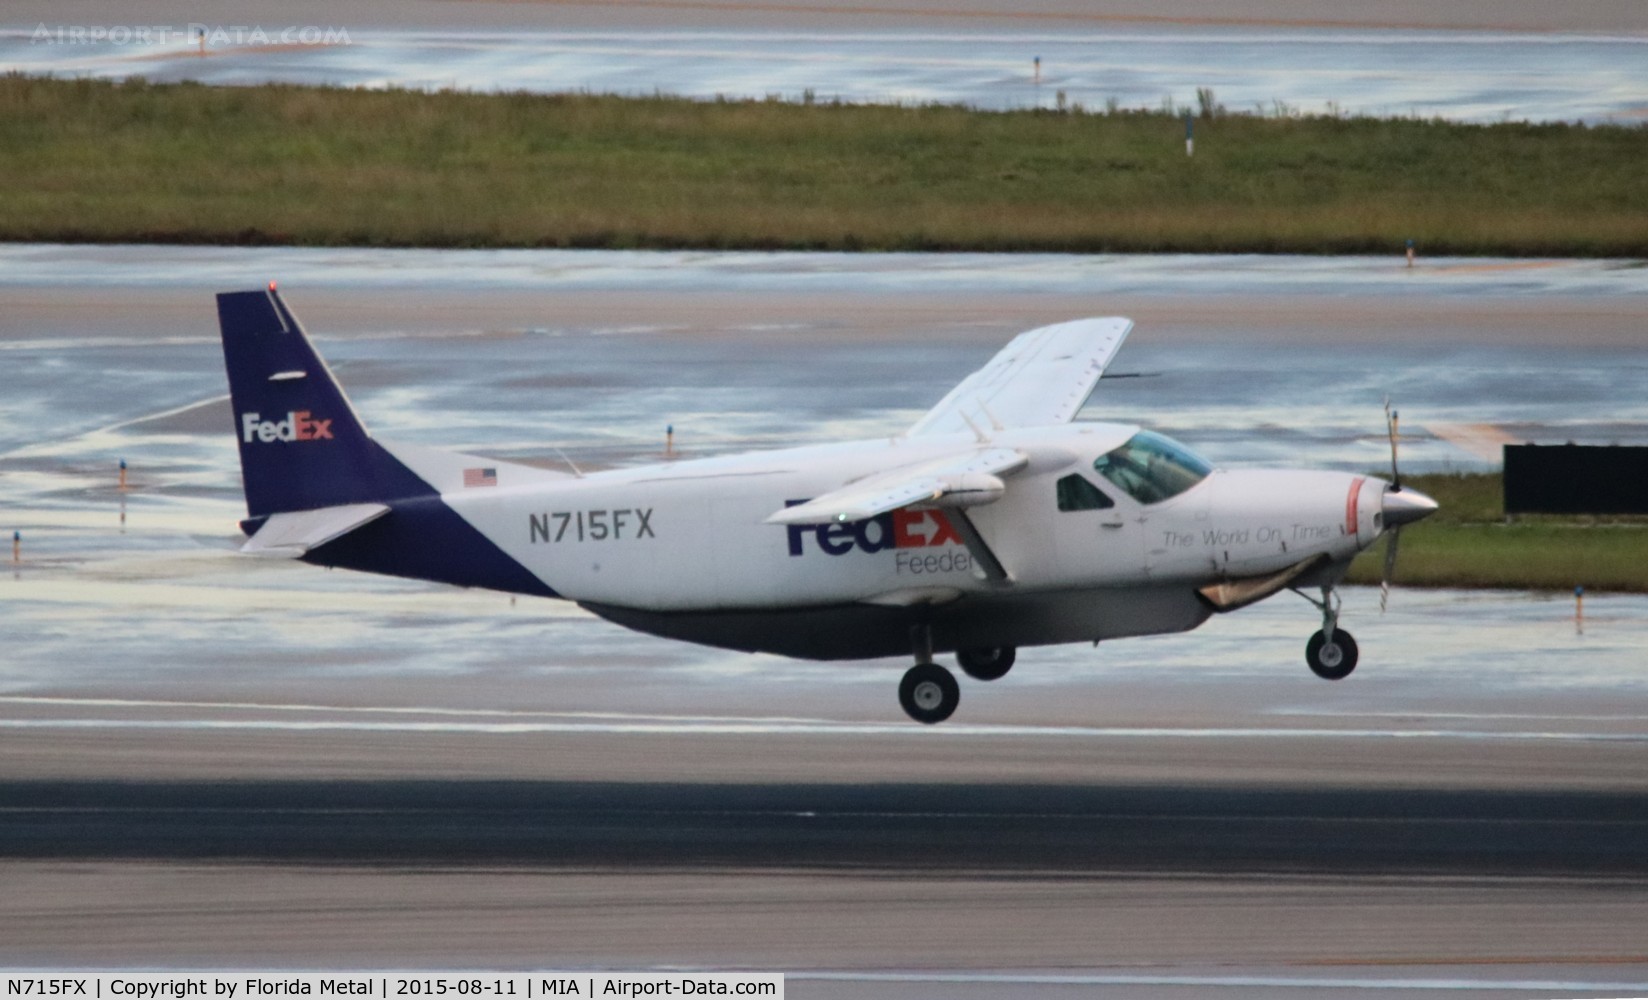 N715FX, 1995 Cessna 208B Super Cargomaster C/N 208B0440, Fed Ex Feeder